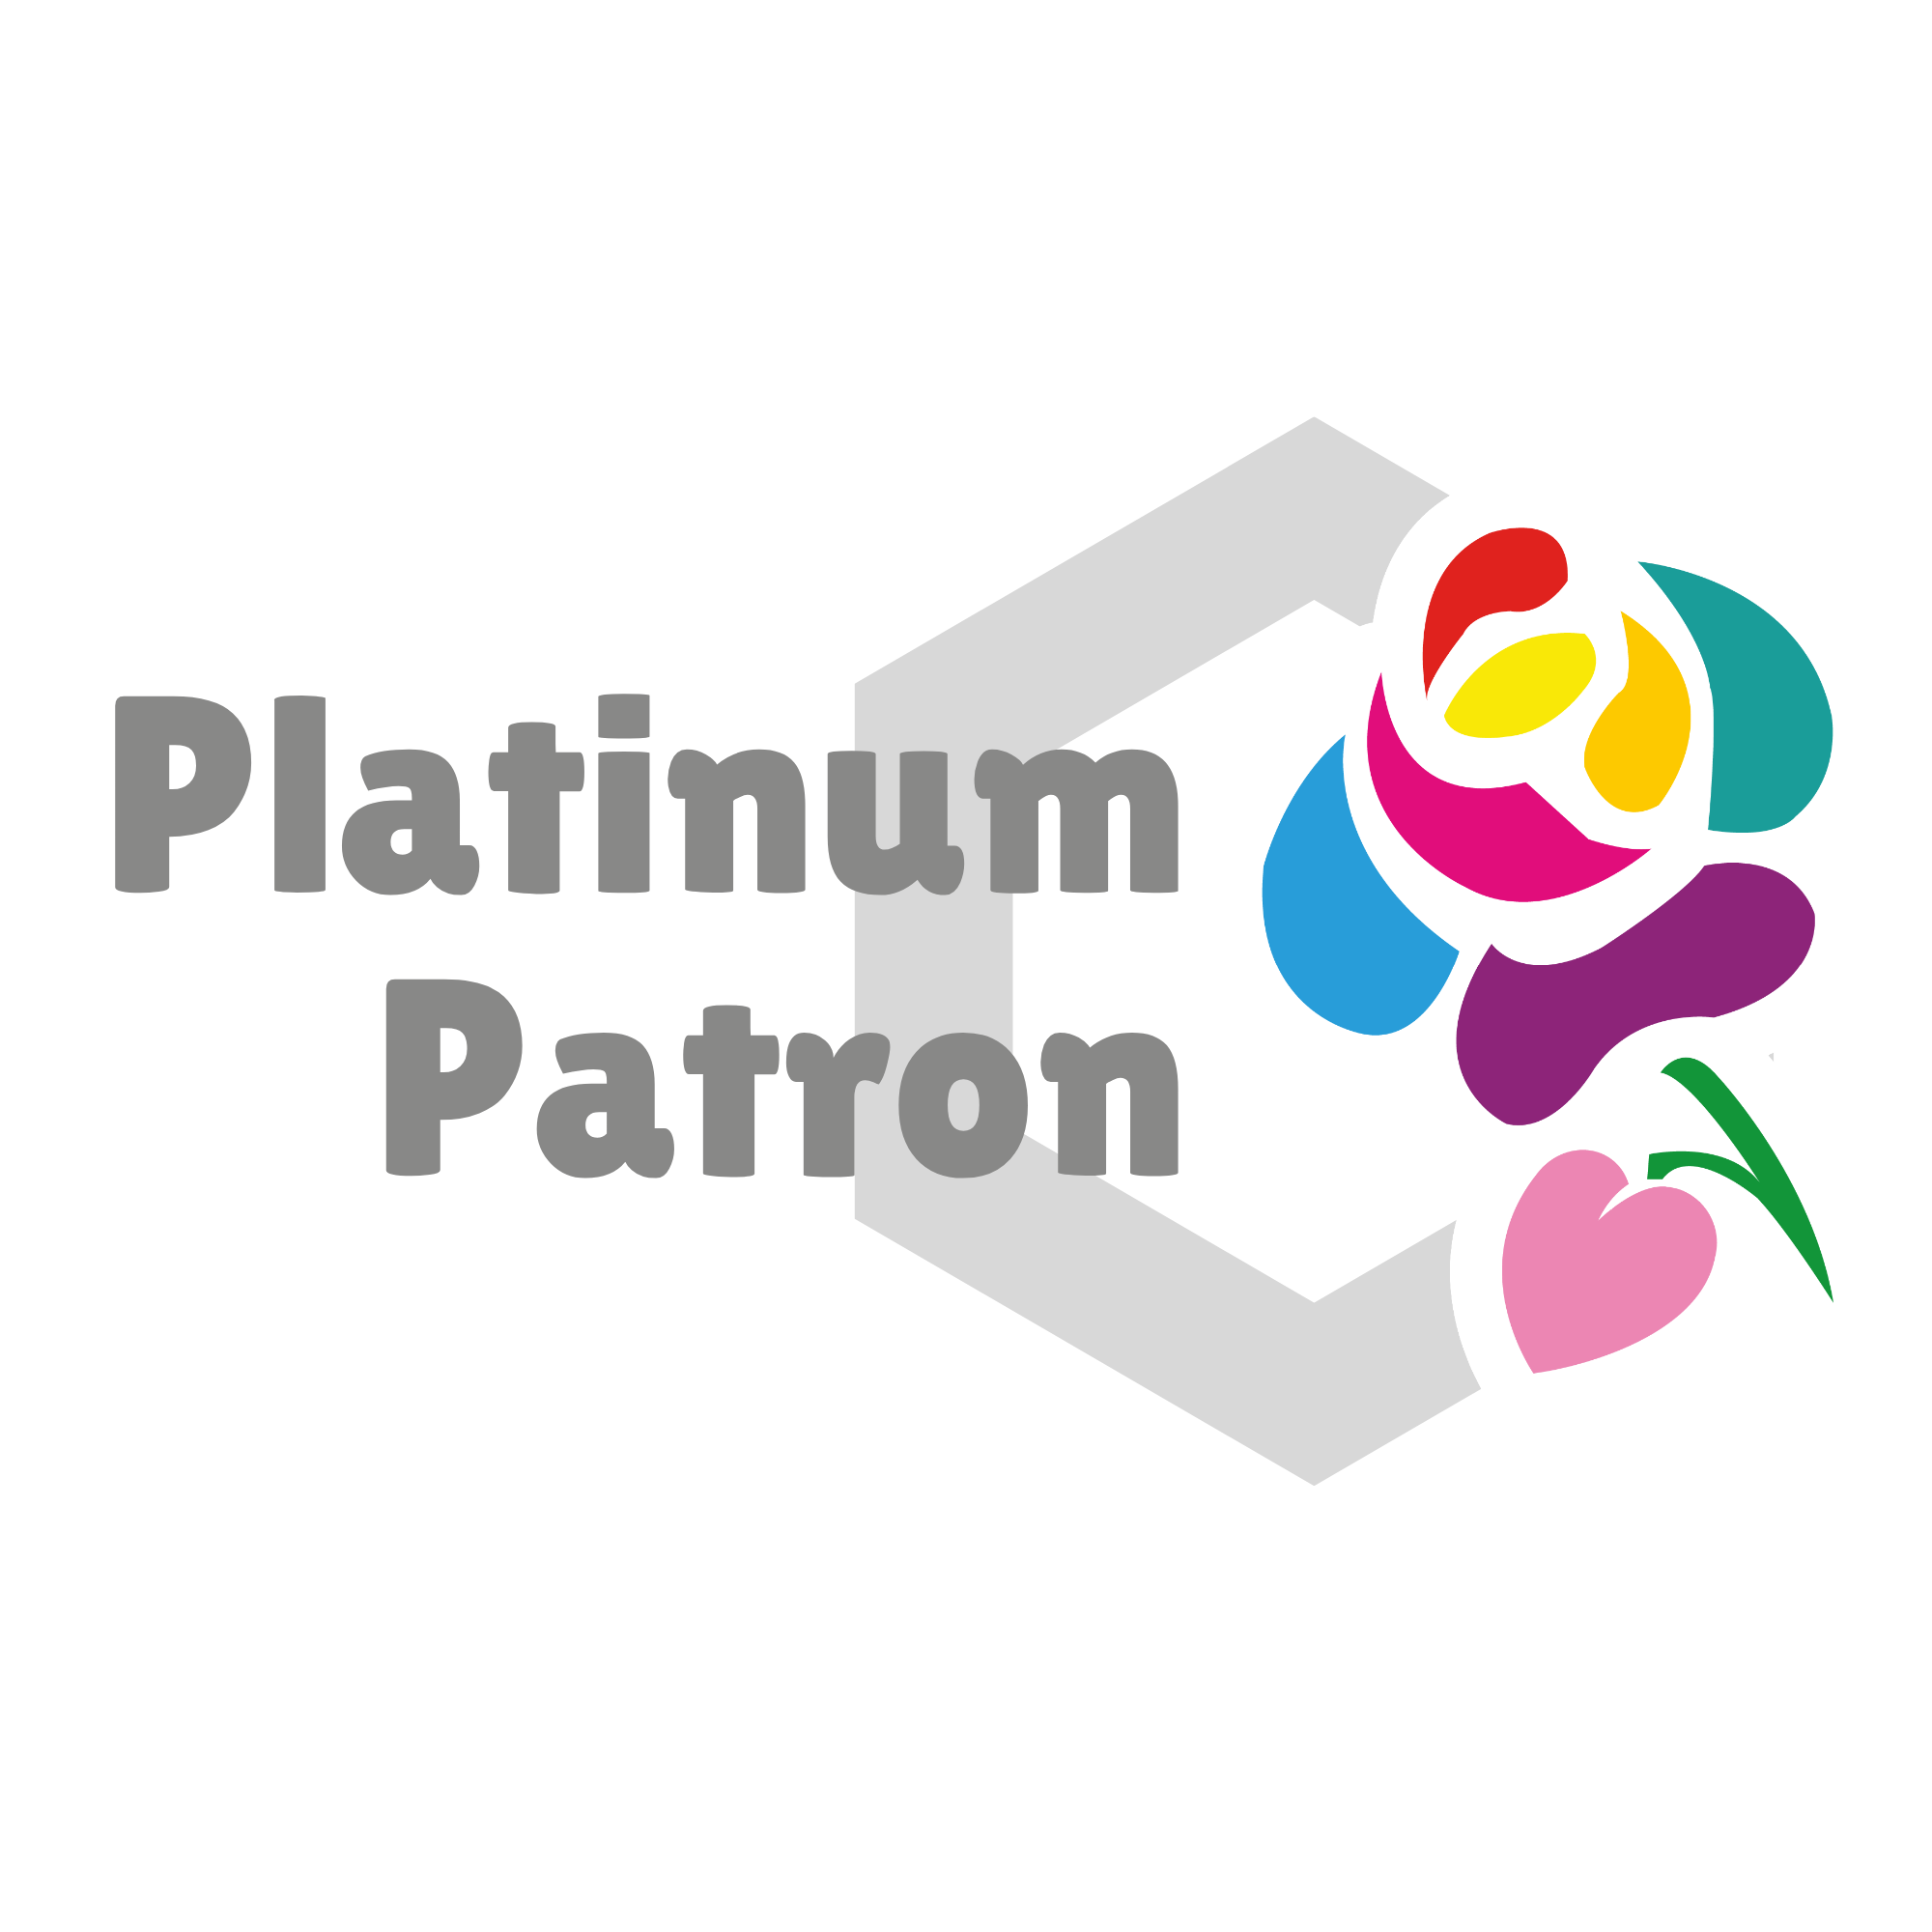 Platinum patron